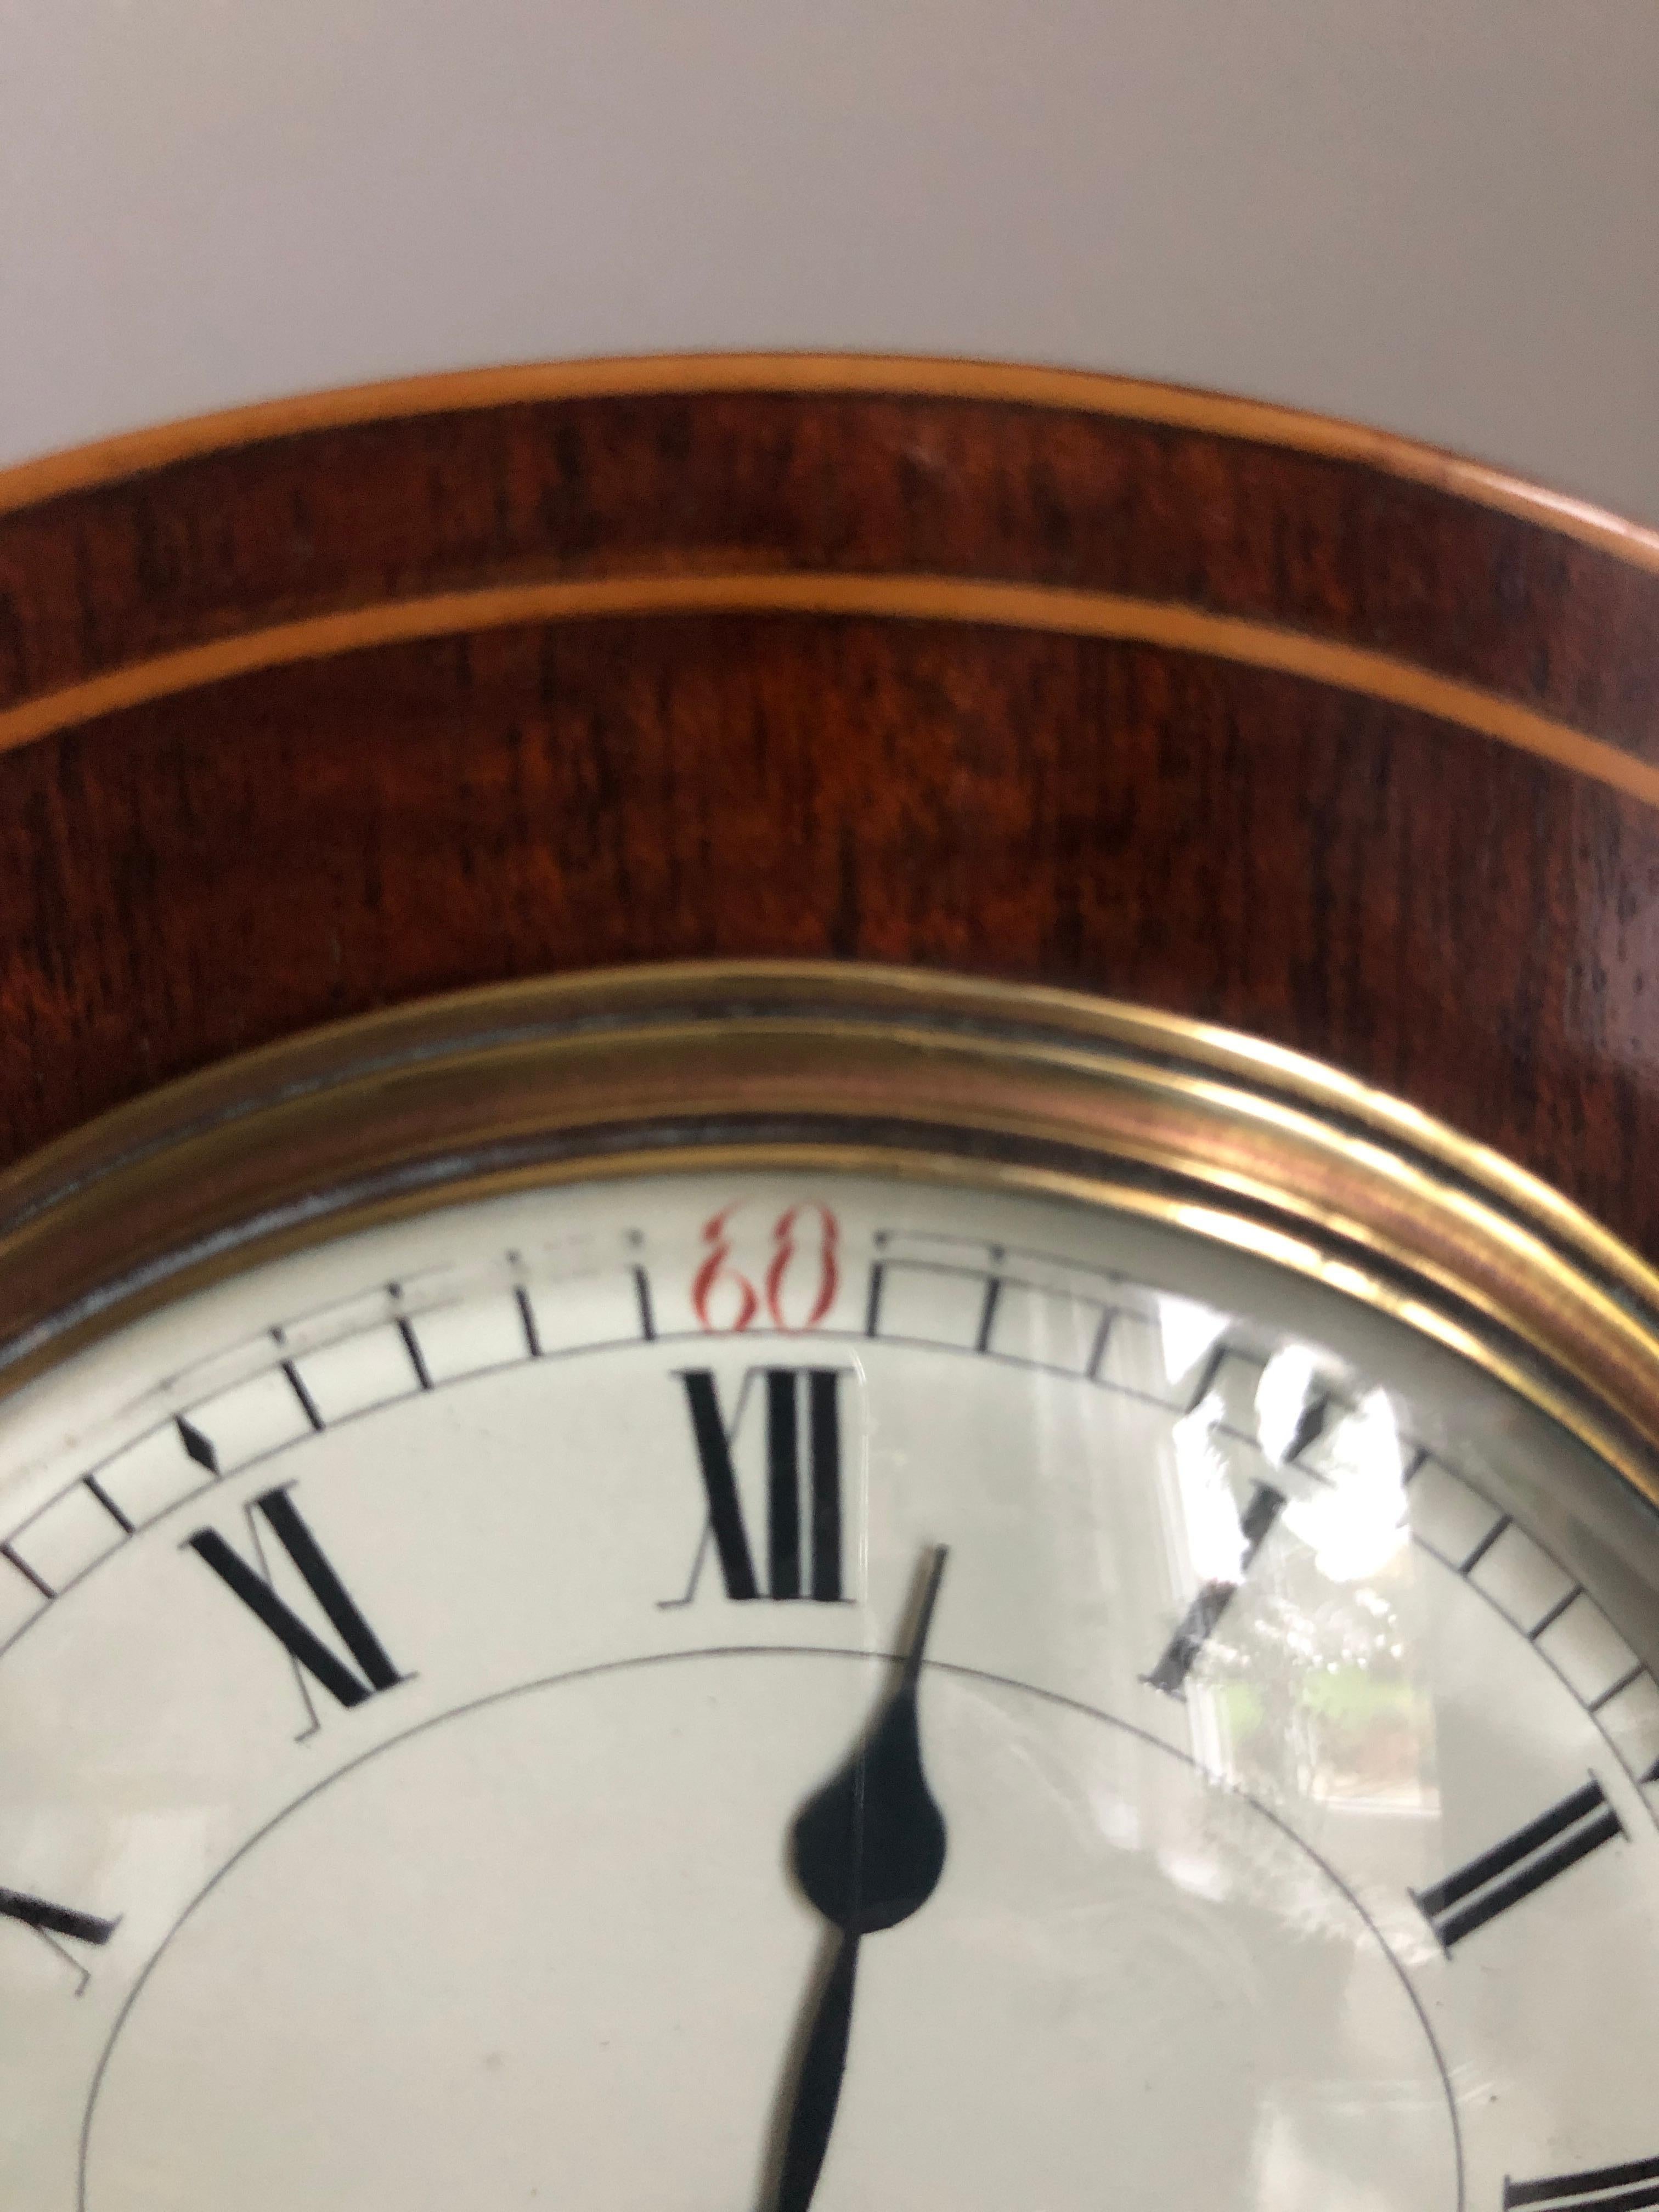 Belle horloge de bureau édouardienne en acajou marqueté, avec un magnifique boîtier en marqueterie en forme de ballon et des pieds à boule en laiton d'origine. Un élégant cadran émaillé avec des aiguilles originales avec un mouvement de 8 jours. Il